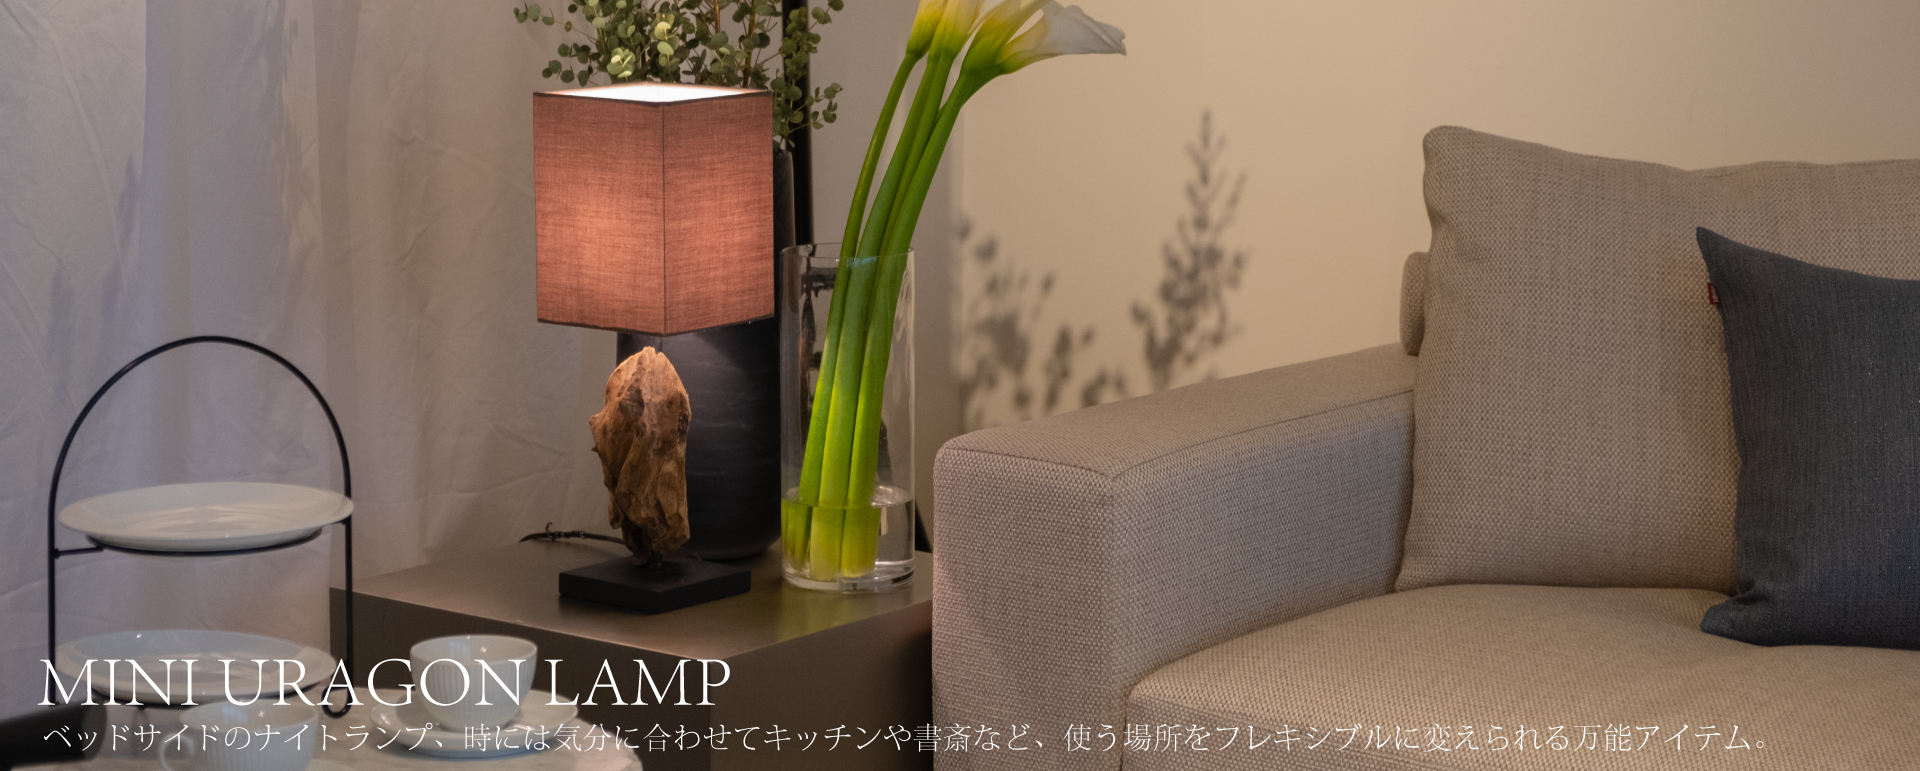 MINI URAGON LAMPテーブルランプ幅15cmと小ぶりなテーブルランプ。ベッドサイドのナイトランプ、時には気分に合わせてキッチンや書斎など、使う場所をフレキシブルに変えられる万能アイテム。